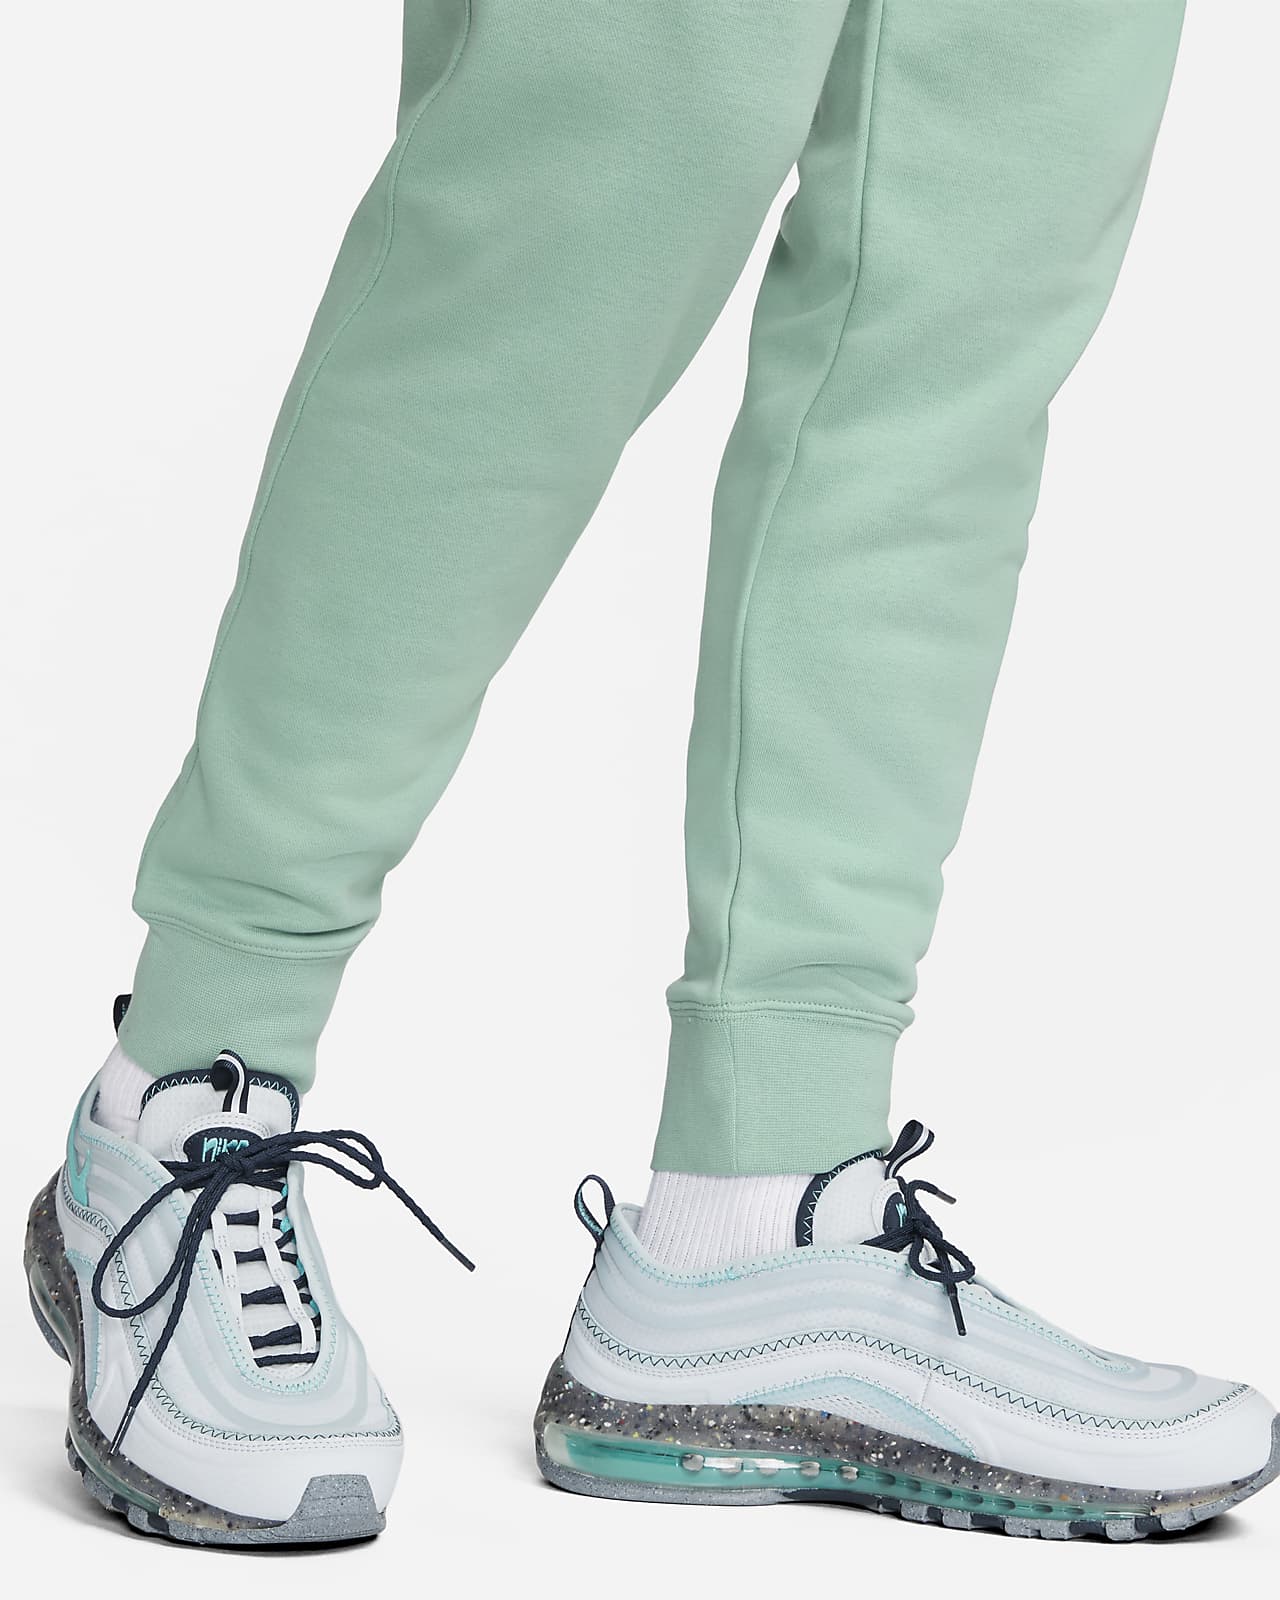 Nike Sportswear Air Max Men's Joggers